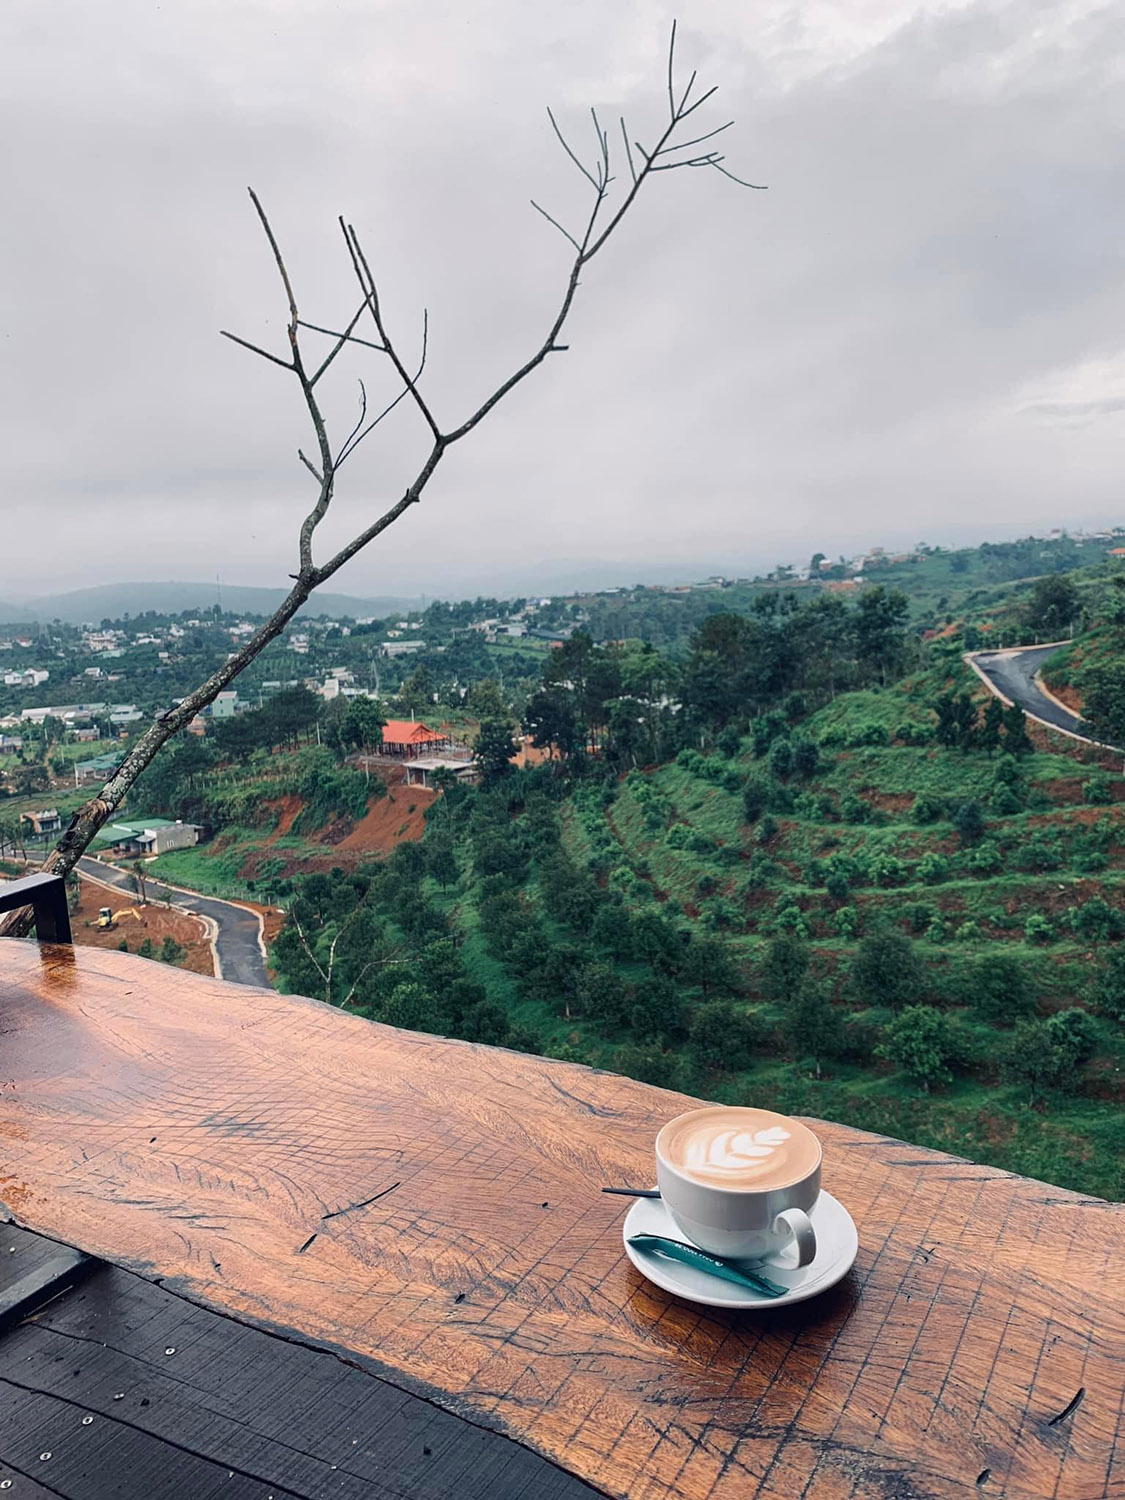 Sunset Chill Coffee ở Bảo Lộc, hoàn toàn giữ được sự hoang sơ và thiên nhiên trong lành của vùng đất này. Hãy thưởng thức một tách cà phê tinh tế ở đây và thả mình vào cảm giác yên tĩnh.